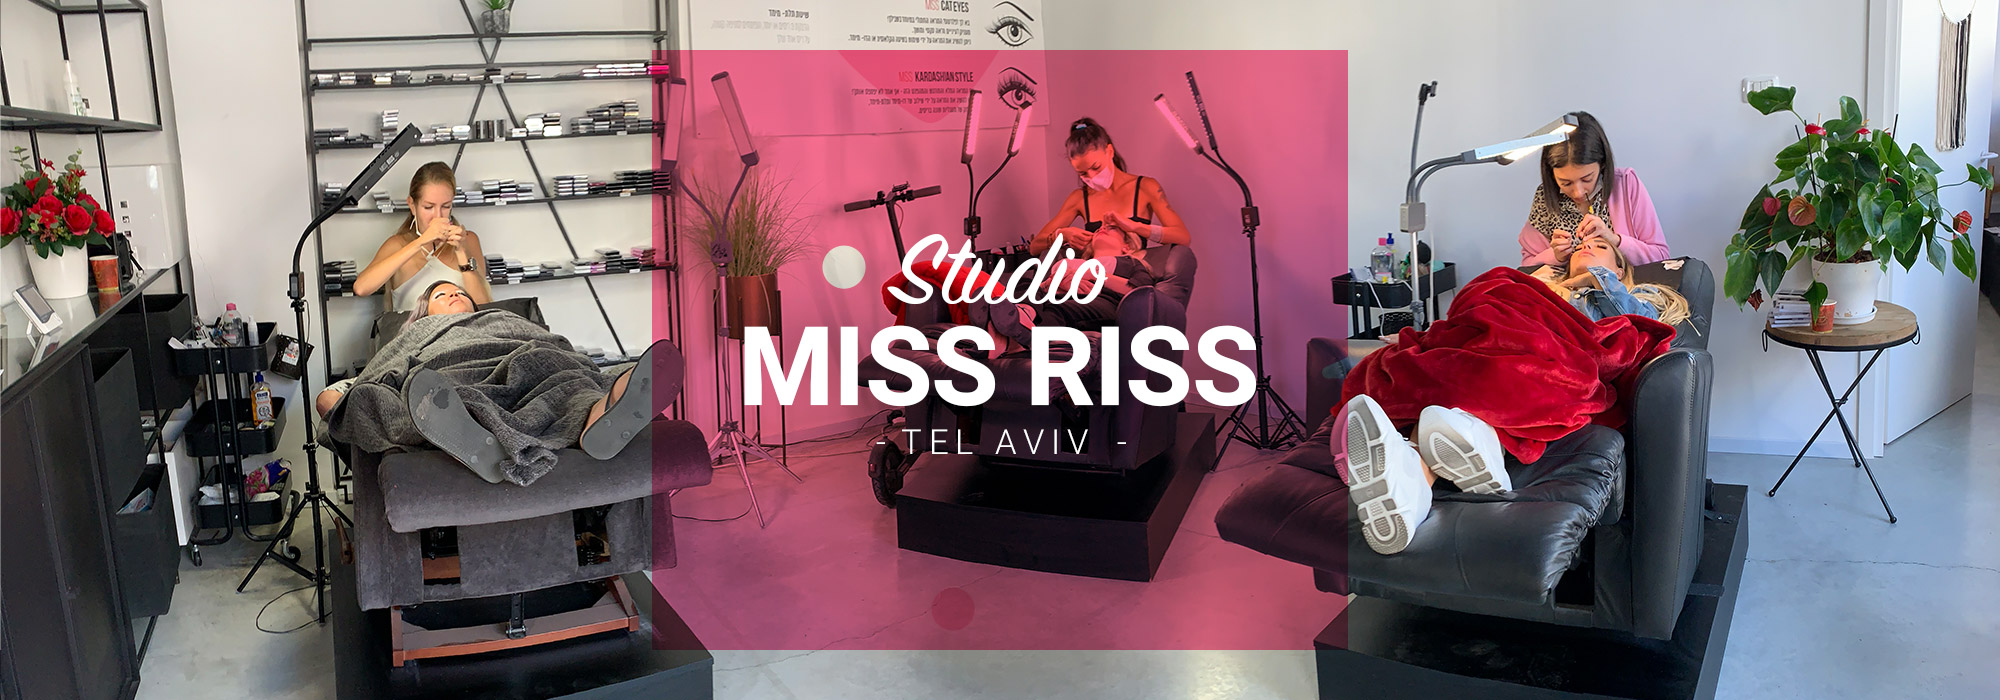 סטודיו מיס ריס Miss Riss בתל אביב